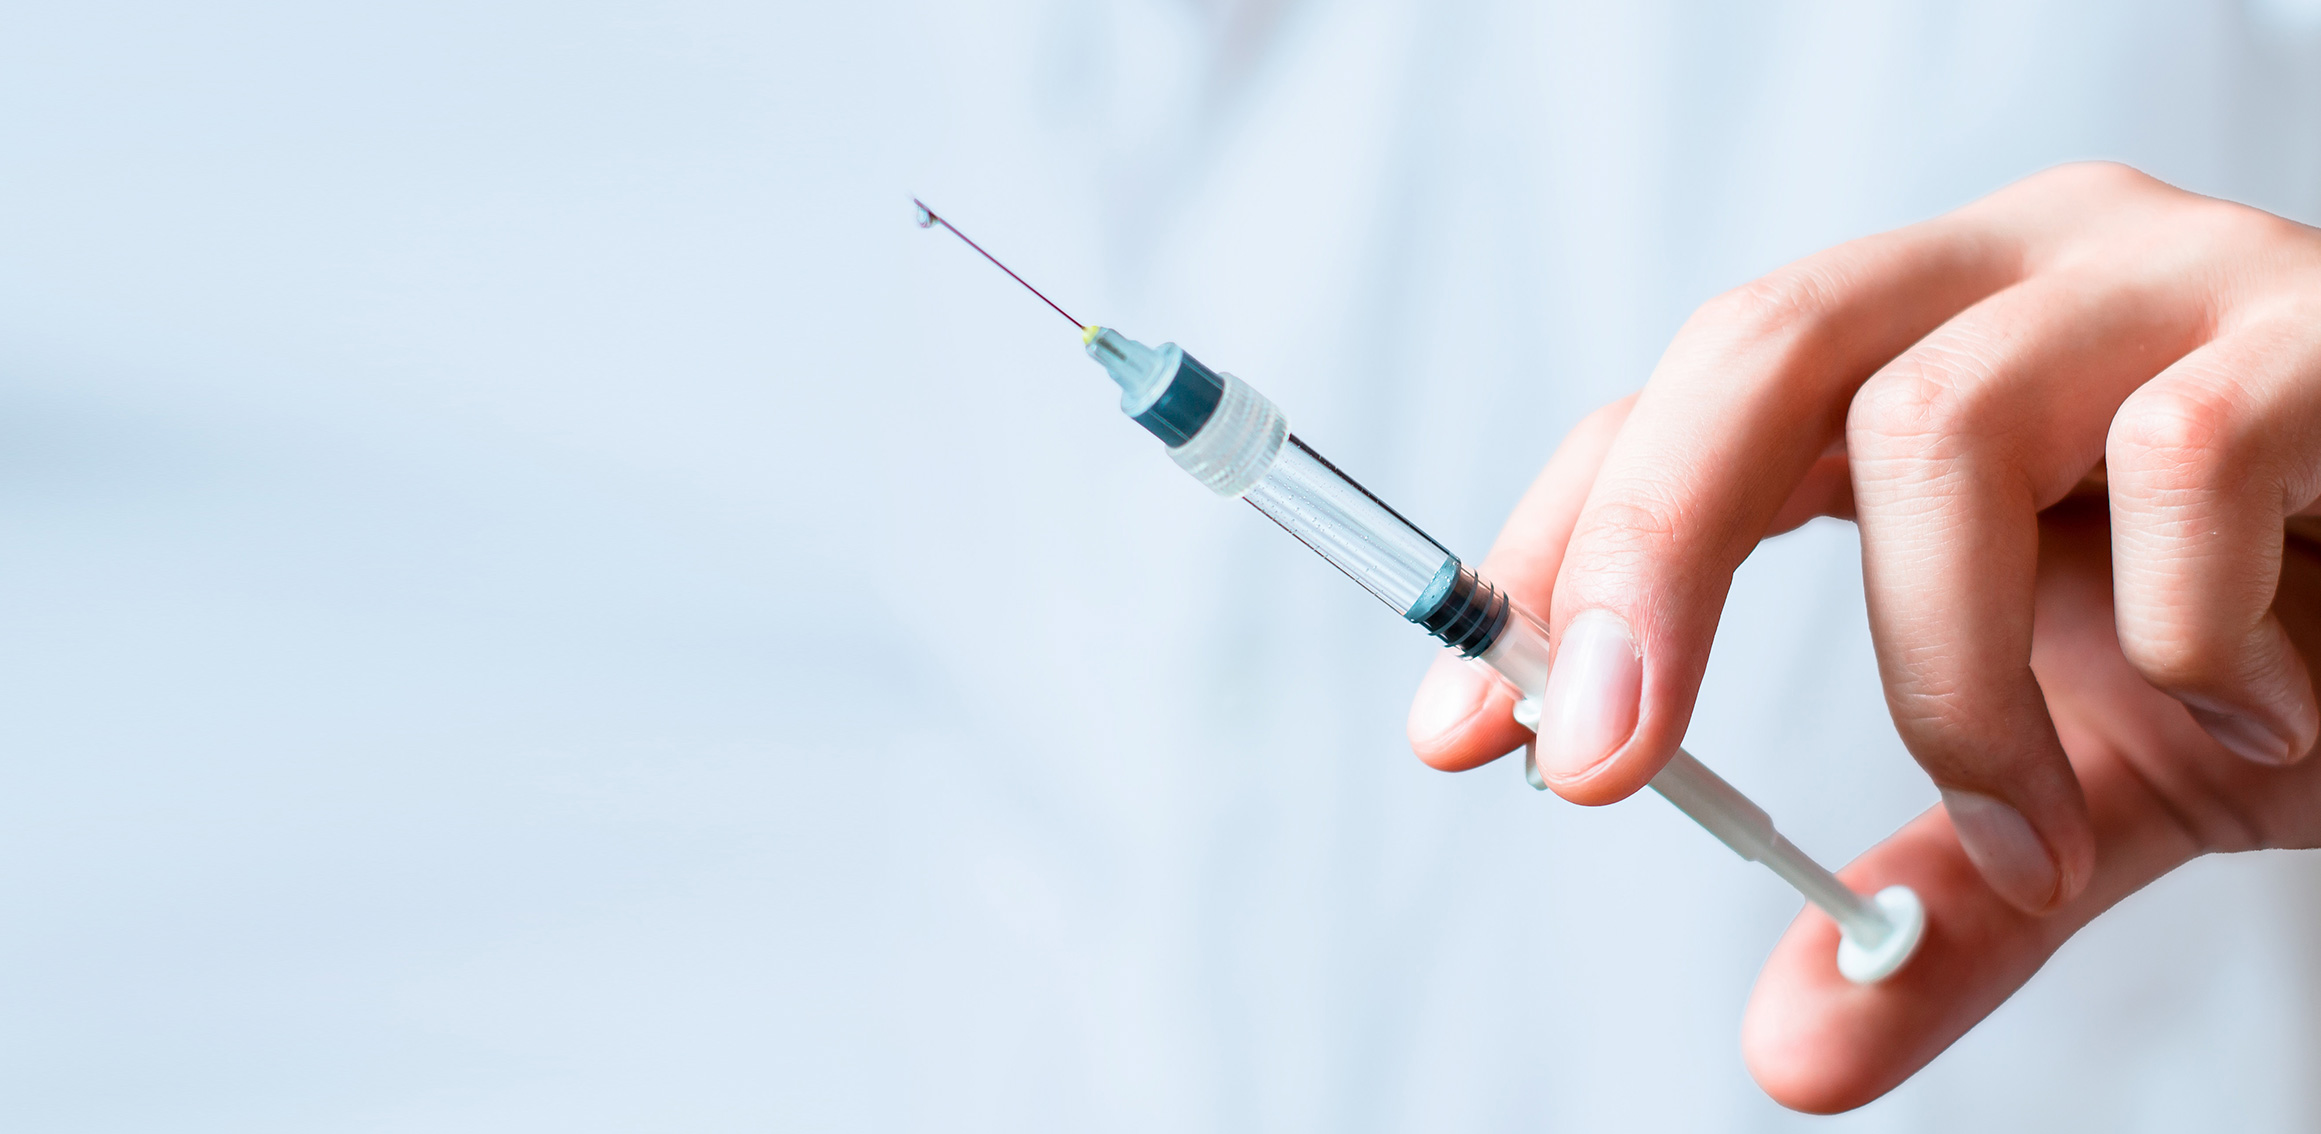 needle-and-syringe-exchange-service